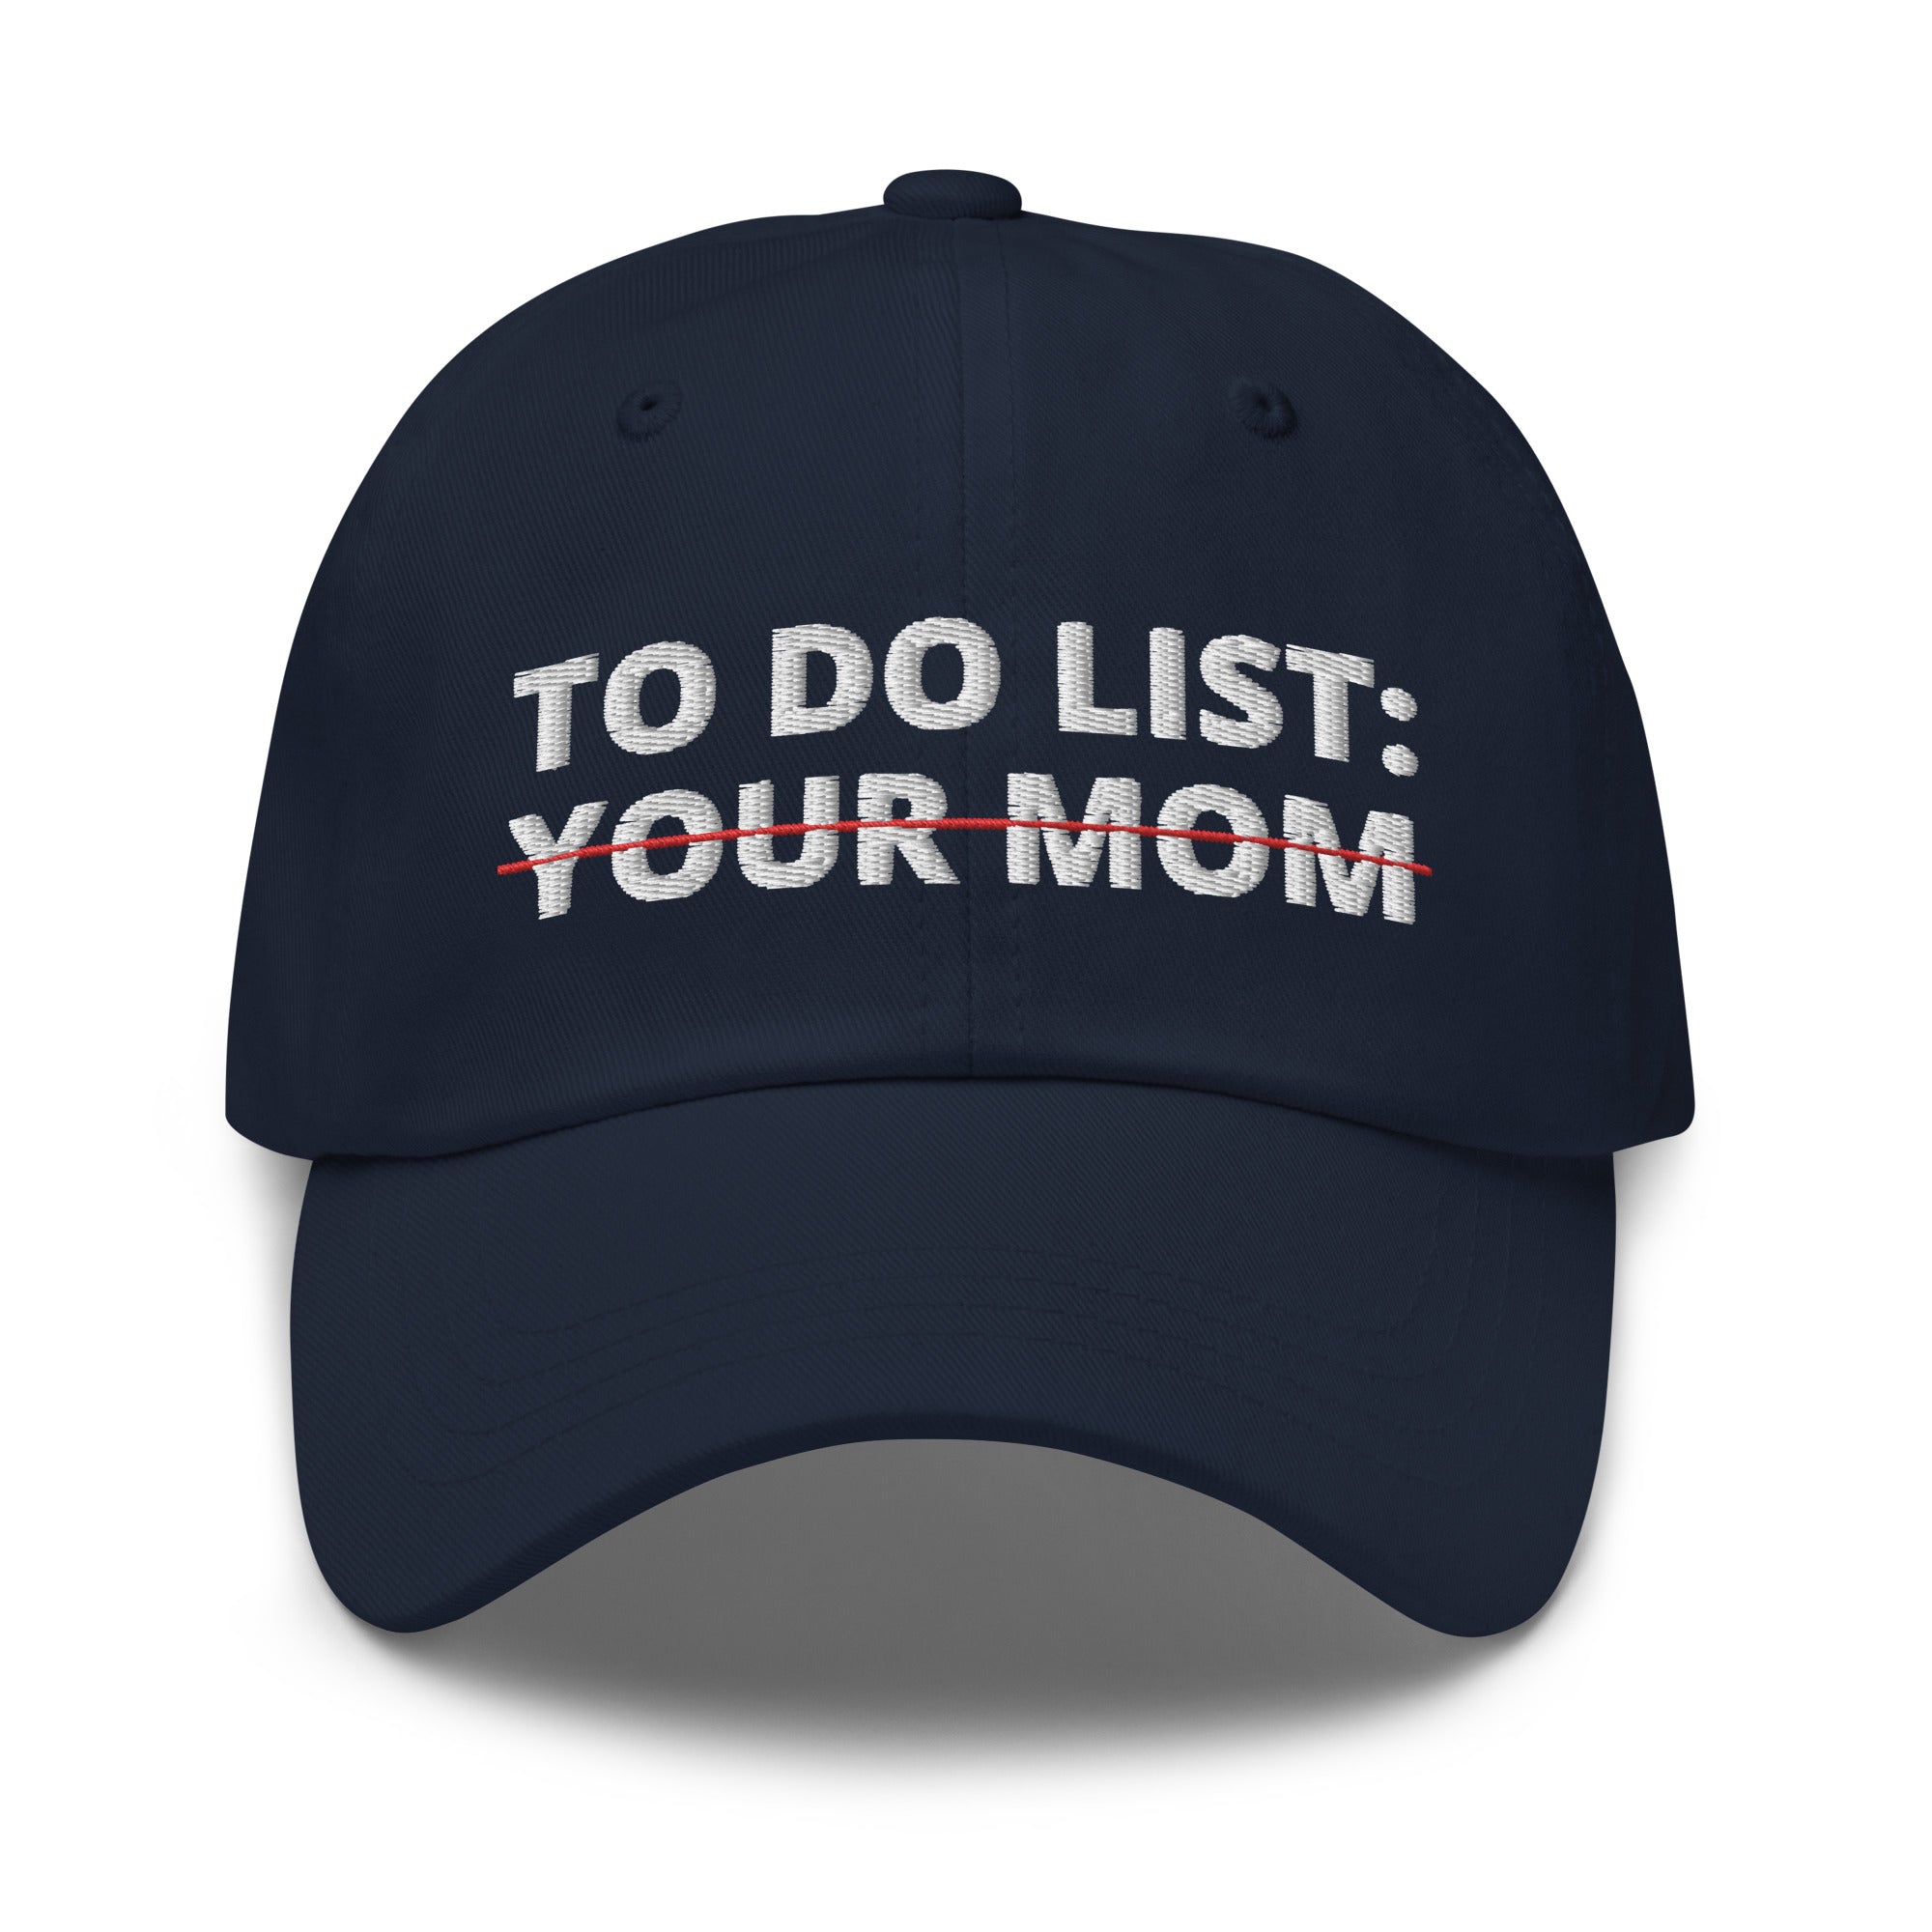 Lista de tareas pendientes de su sombrero de mamá, lista de tareas divertidas, lista de tareas sarcásticas, regalos sarcásticos, sombrero de humor para adultos, gorra de su mamá, chistes divertidos de mamá, sombreros divertidos